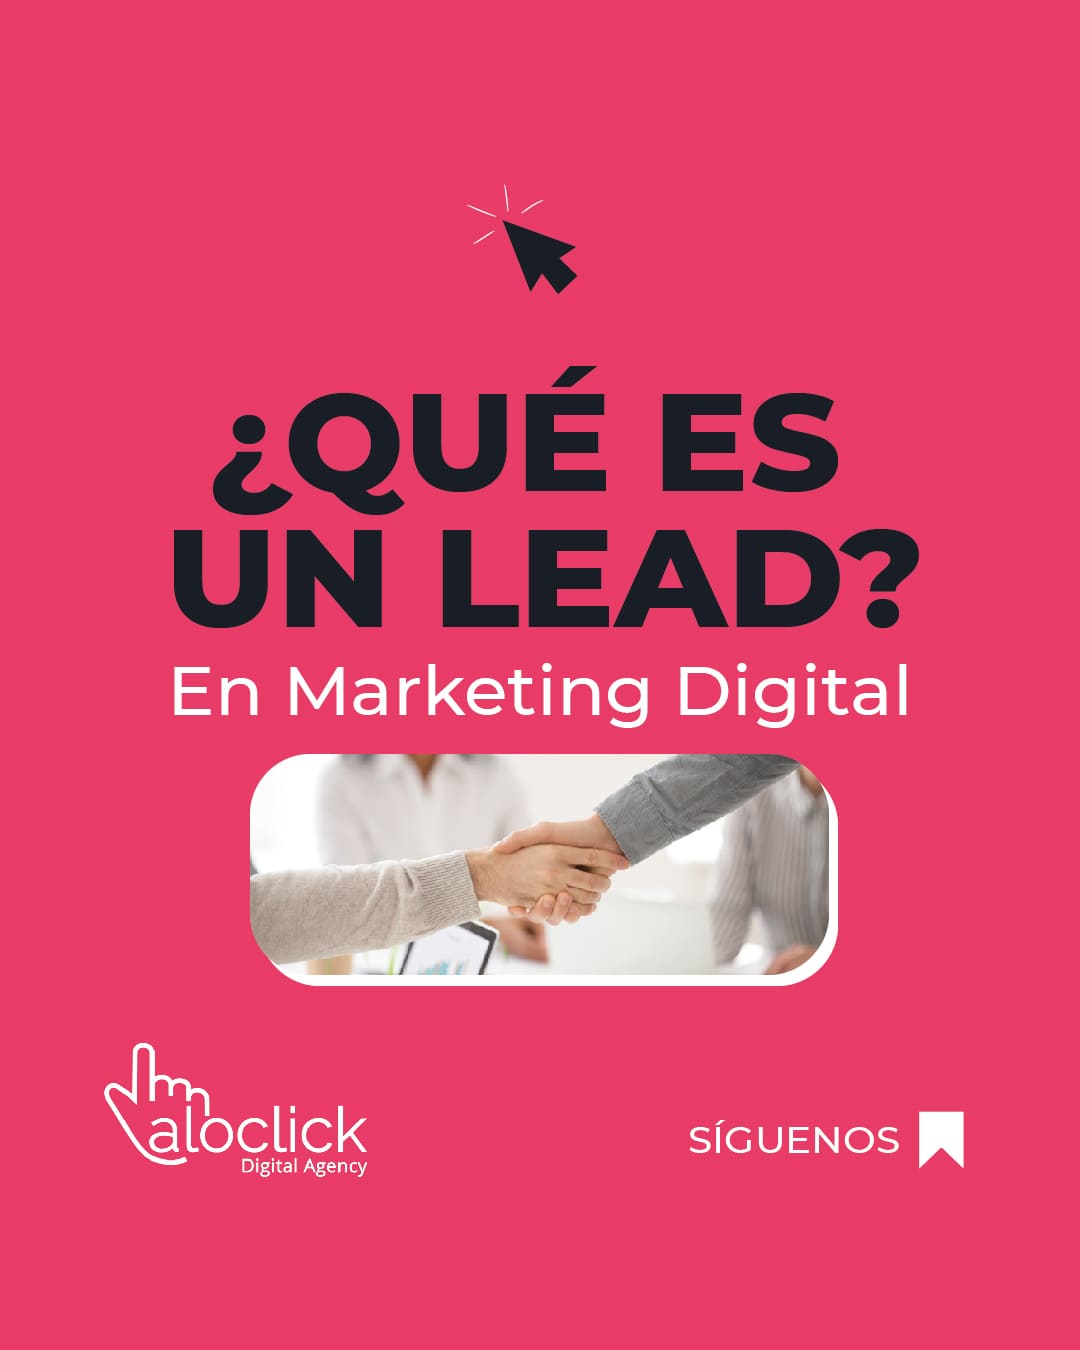 ¿Qué es un lead en Marketing Digital?